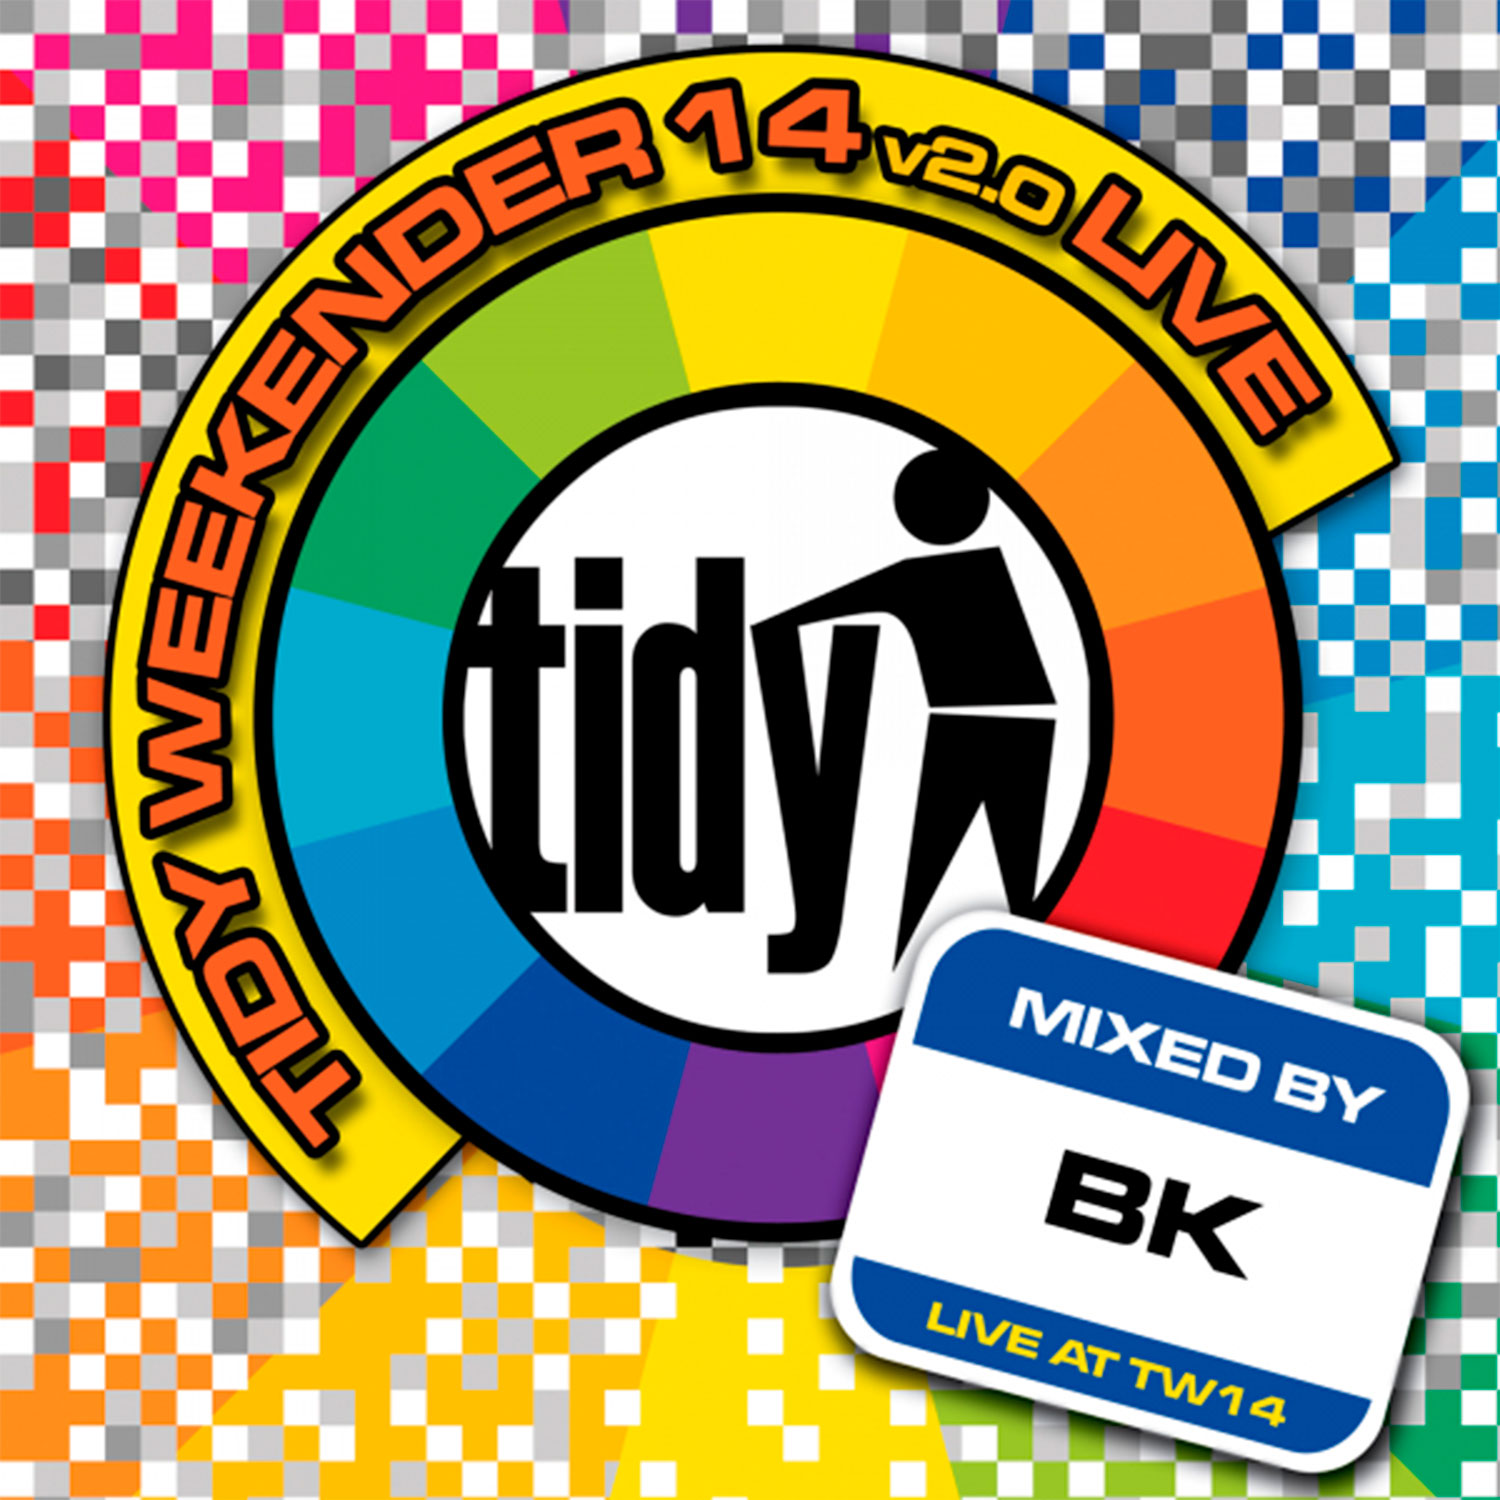 Tidy Weekender 14 v2.0 Live! - BK